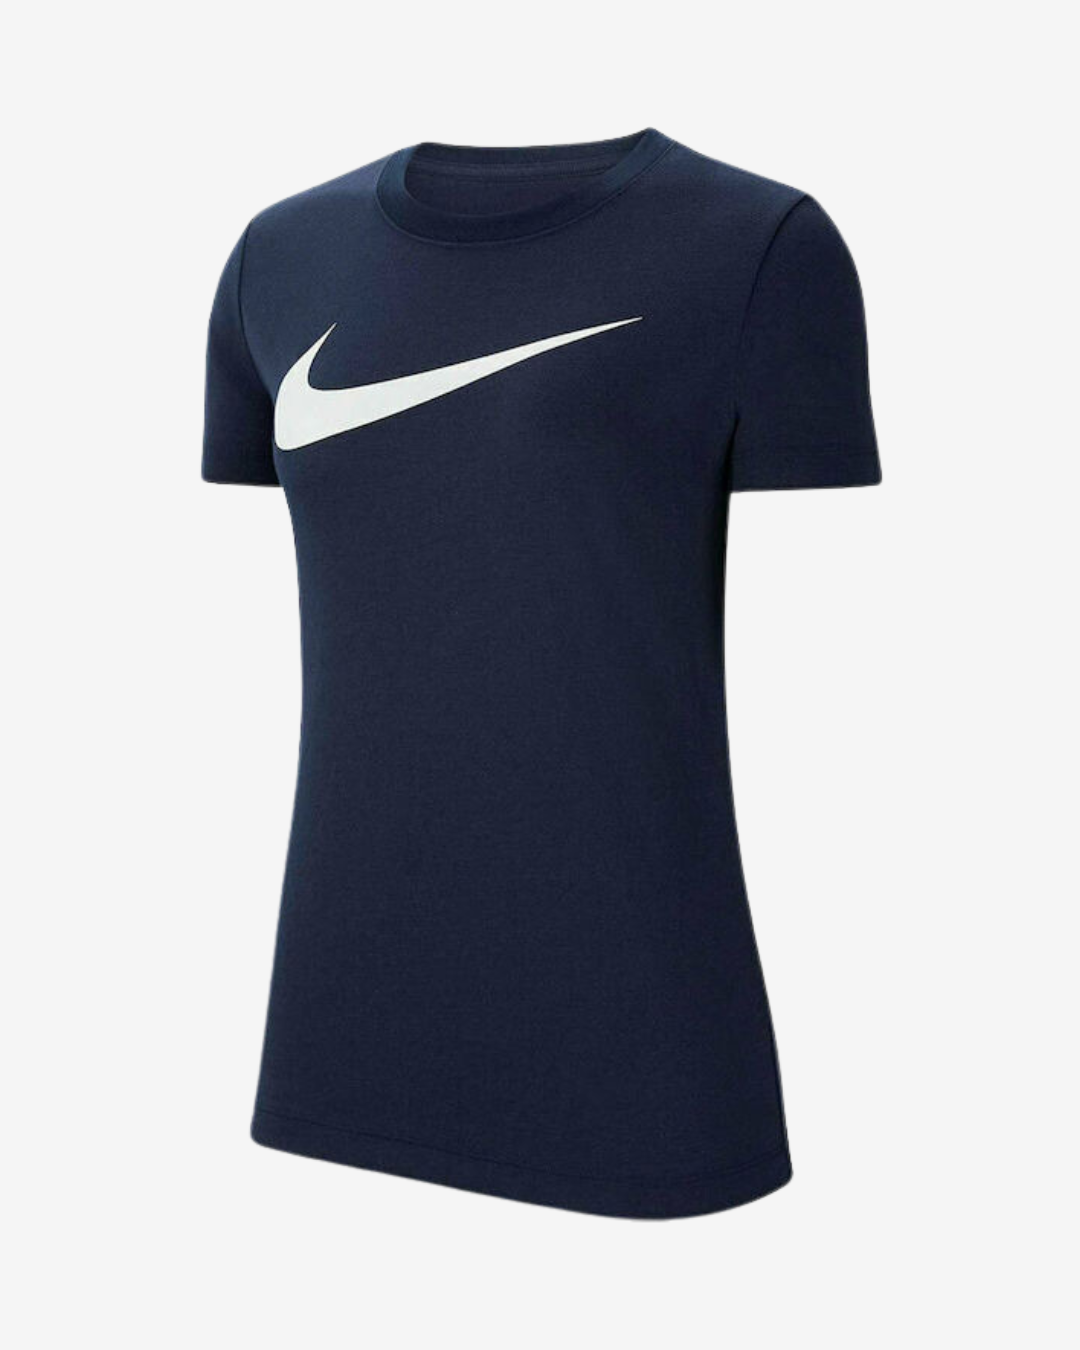 Billede af Nike Dri-fit park 20 dame t-shirt - Navy - Str. XL - Modish.dk